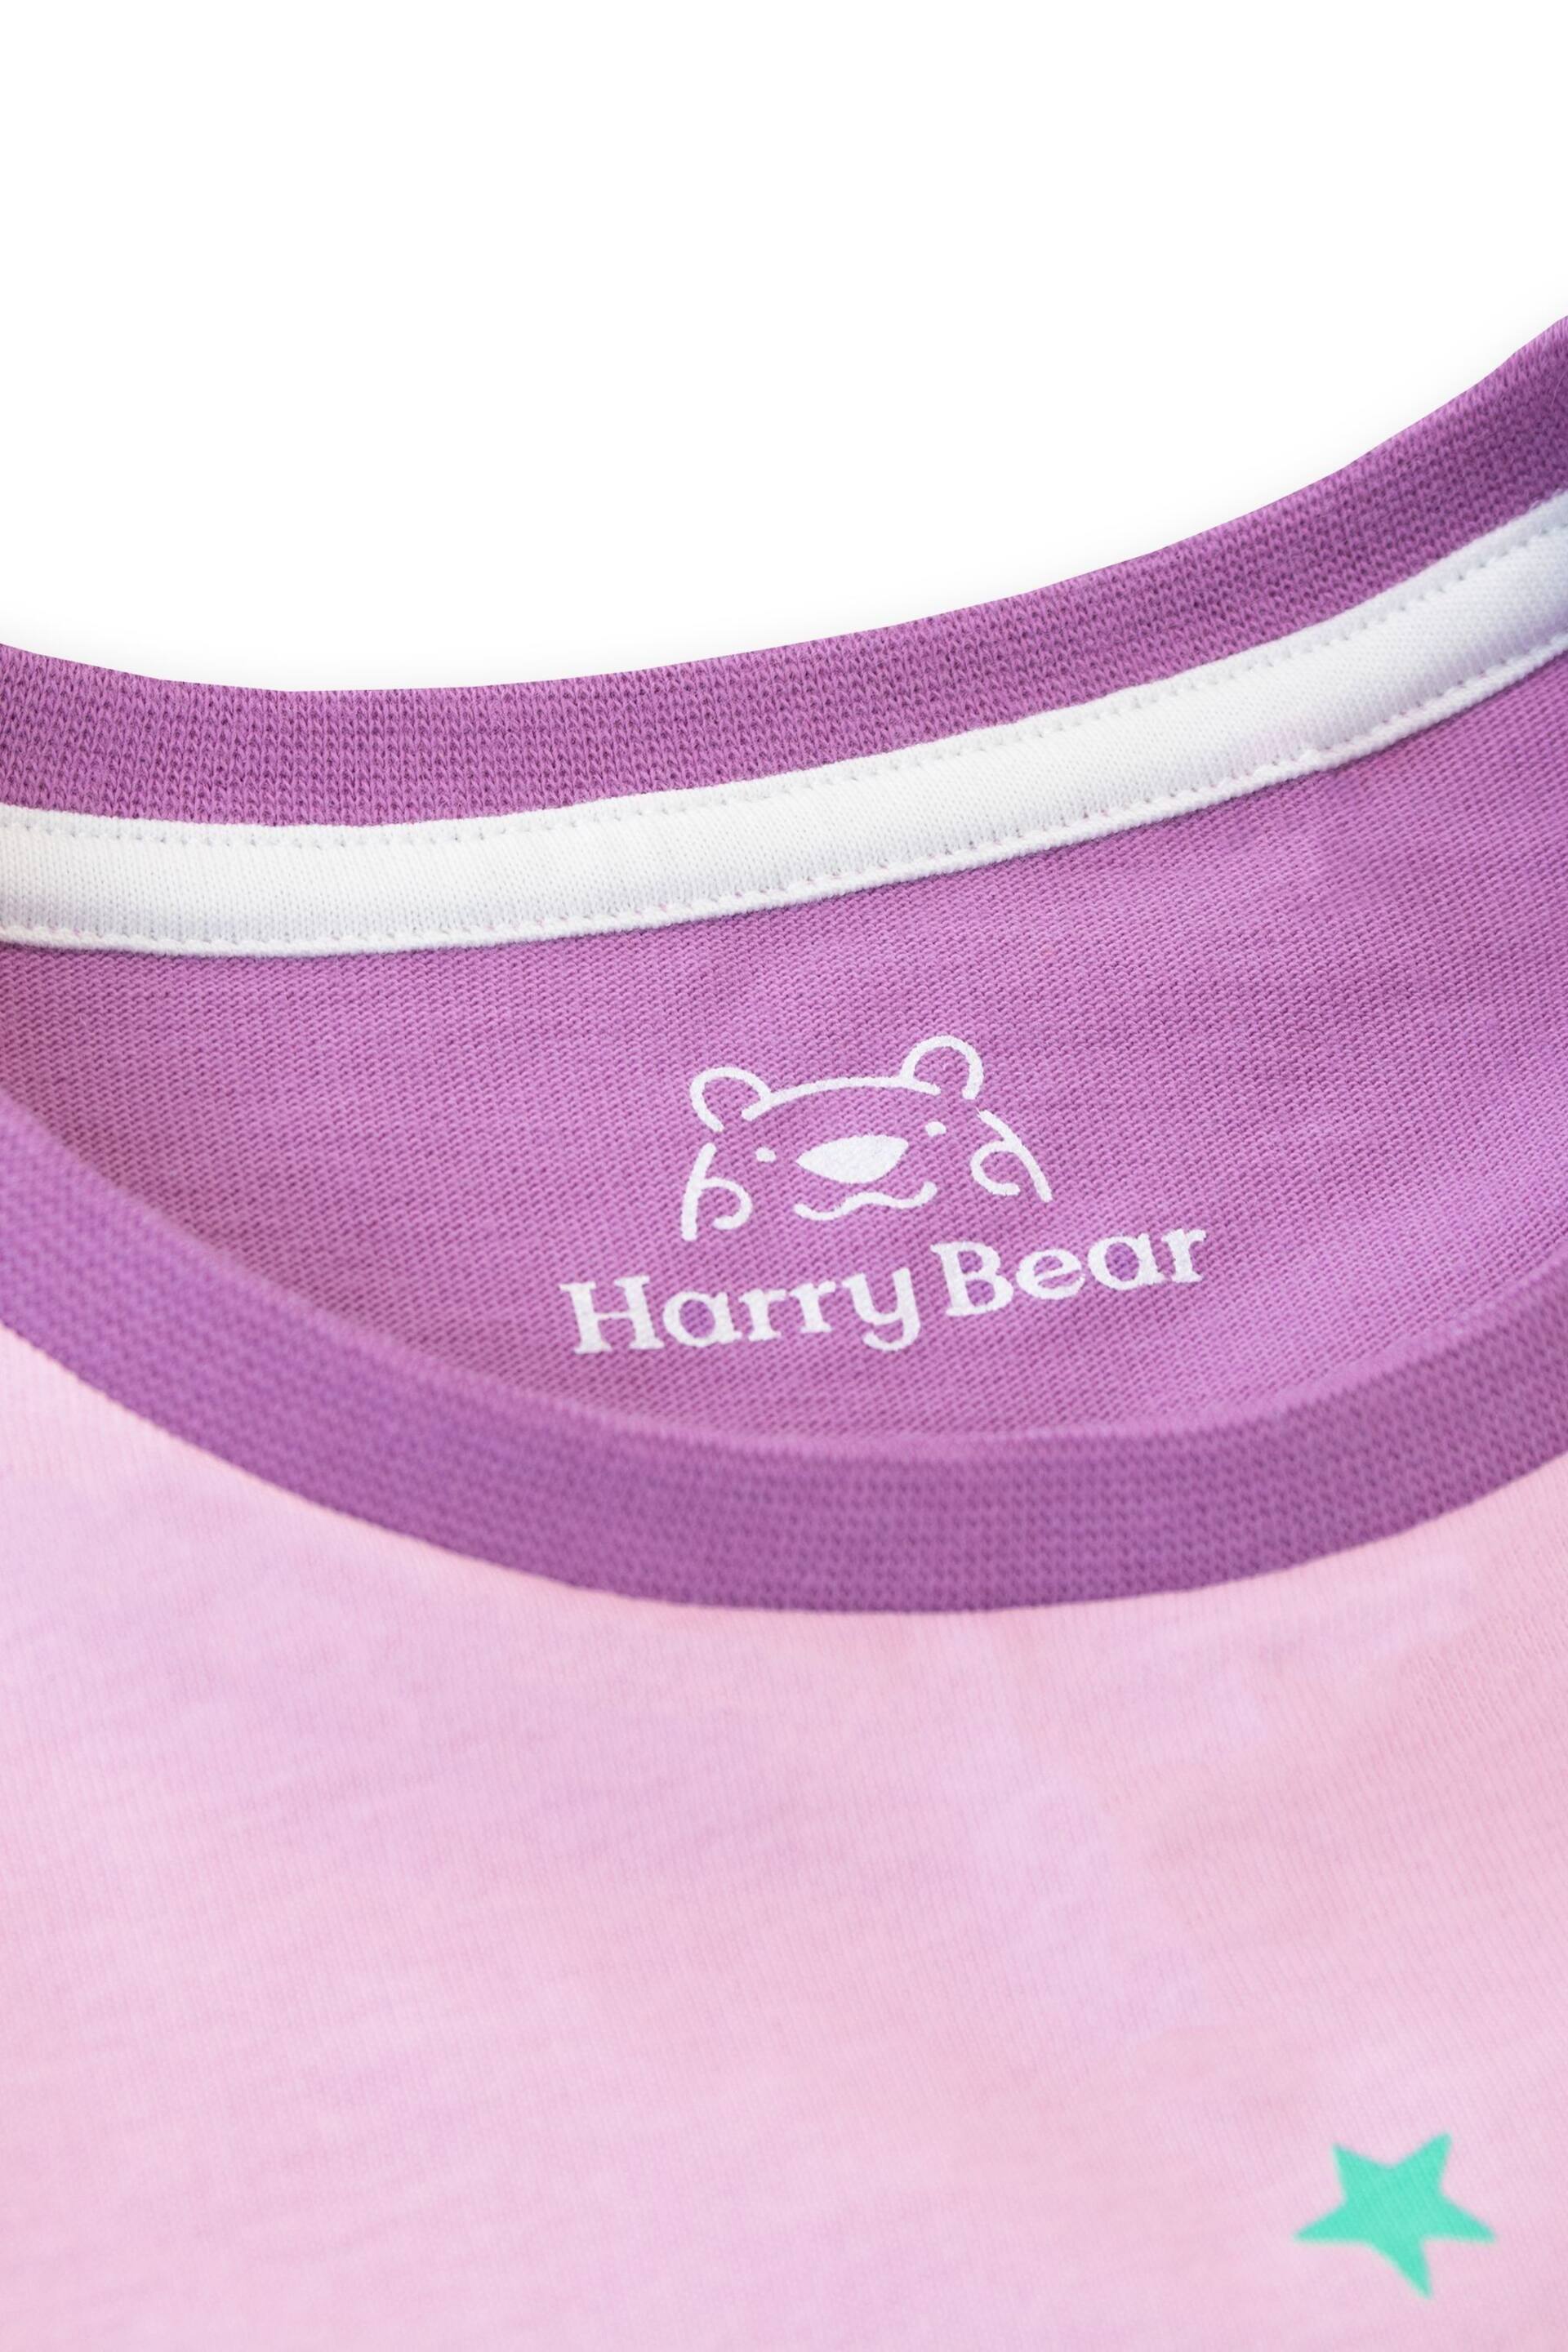 Harry Bear Purple Glitter Unicorn T-Shirt - Image 2 of 4